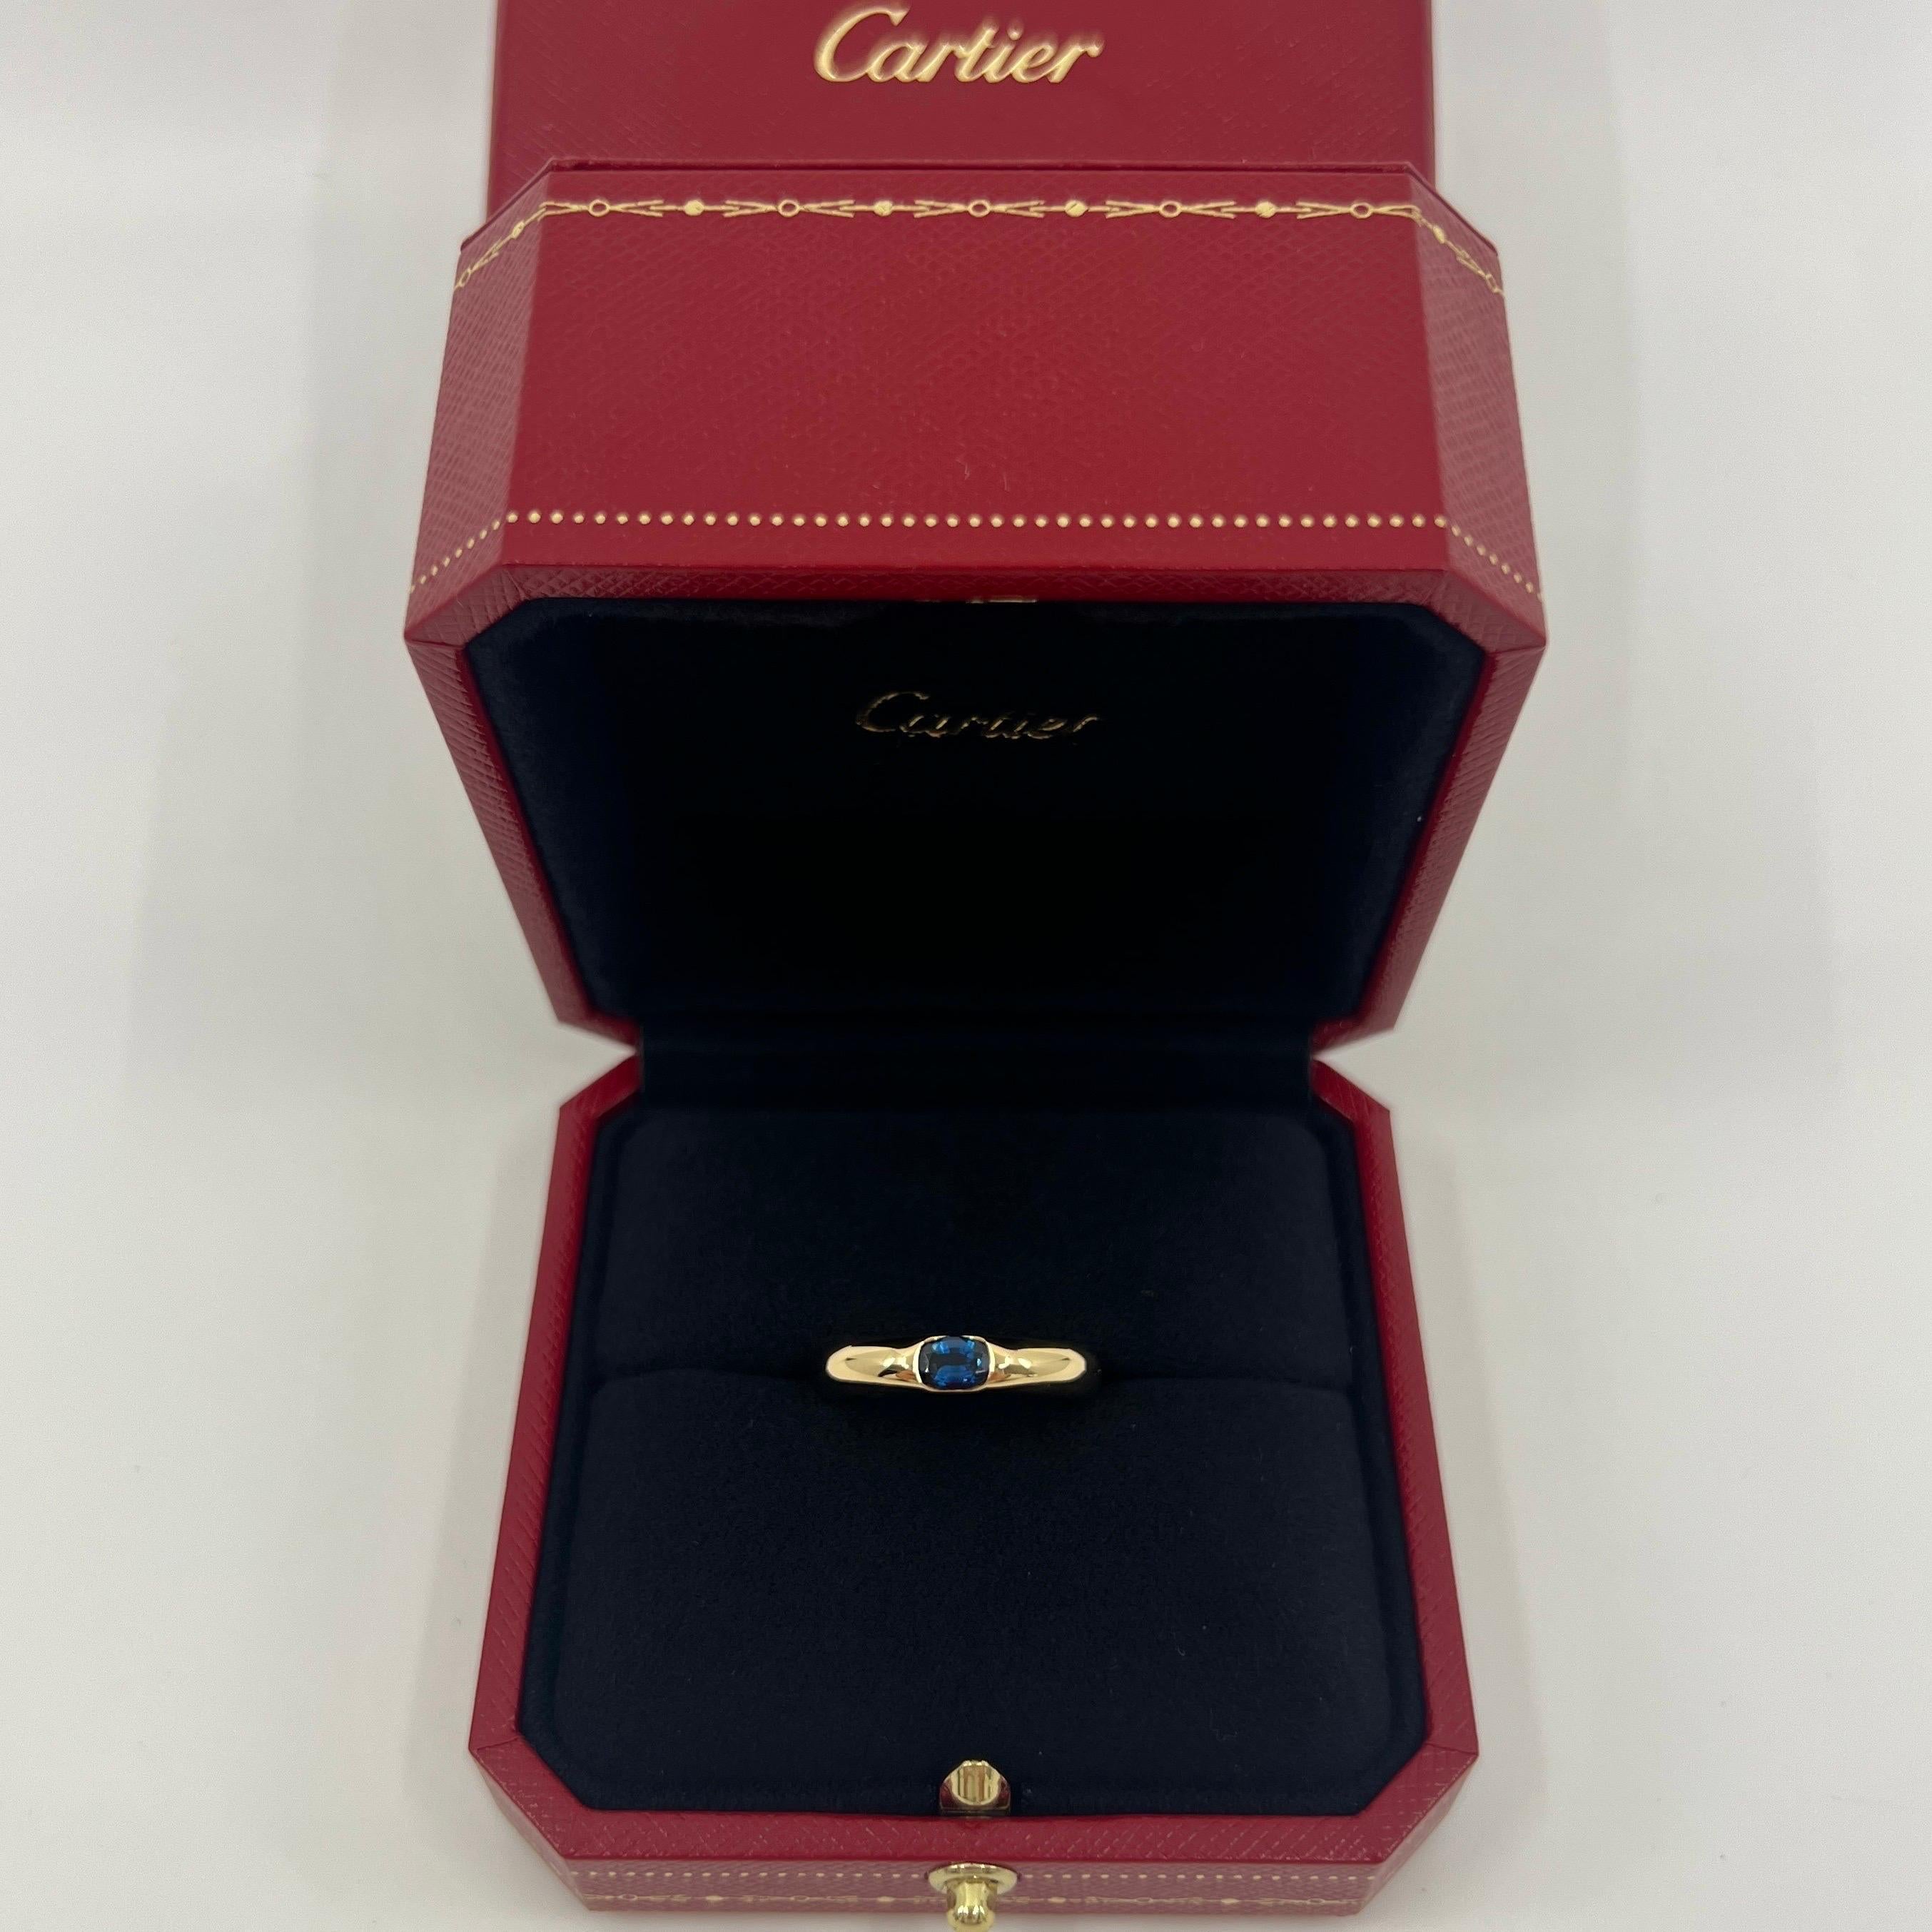 Vintage Cartier Vivid Blue Sapphire 18k Yellow Gold Solitaire Ring.

Superbe bague en or jaune sertie d'un saphir bleu vif. Les maisons de haute joaillerie comme Cartier n'utilisent que les pierres les plus fines et ce saphir ne fait pas exception.